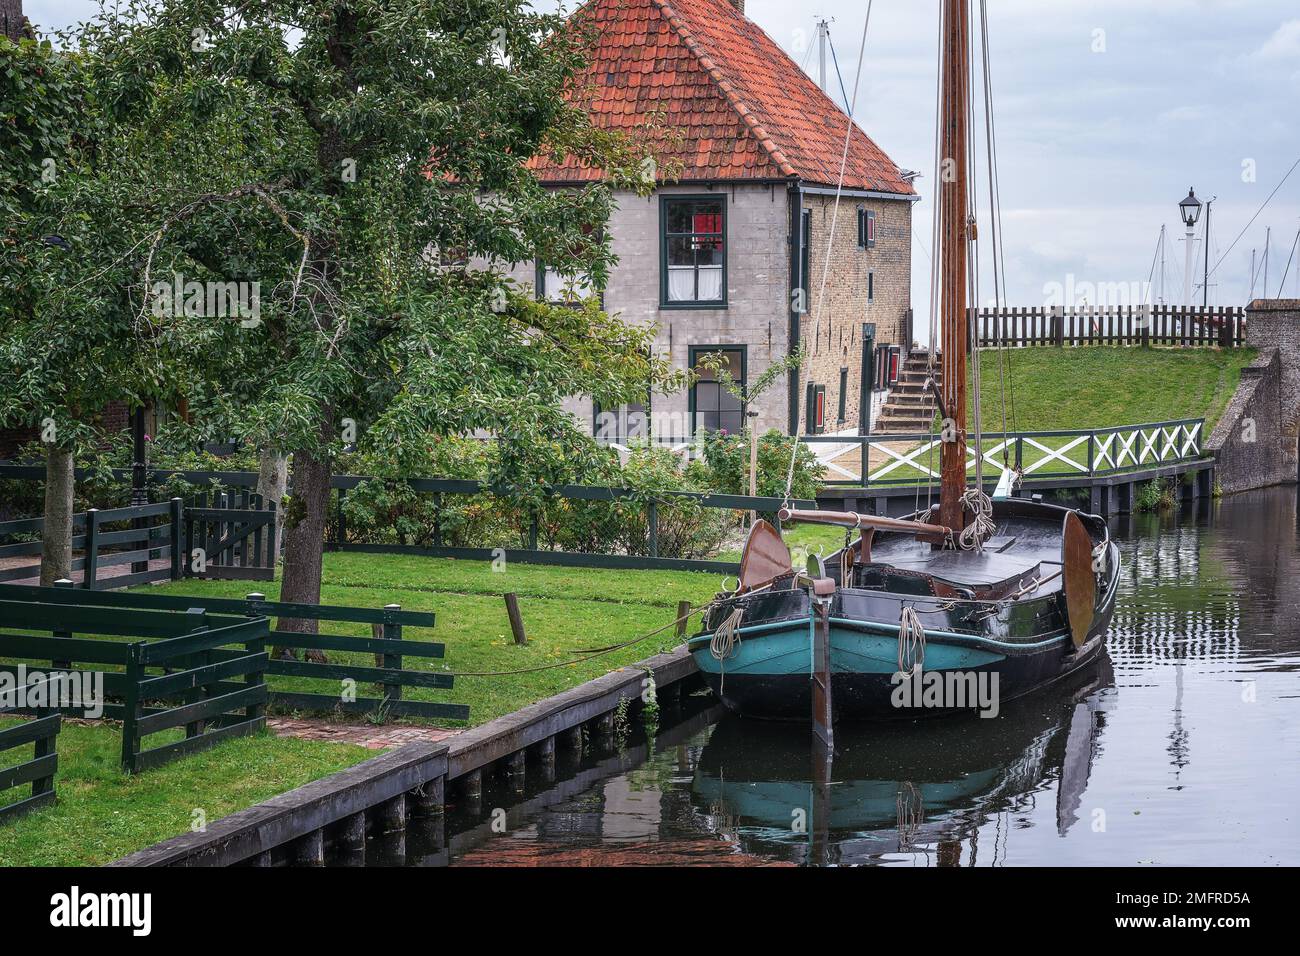 Tradizionale peschereccio olandese con pittoreschi cottage dei pescatori sullo sfondo nella storica città di Enkhuizen, nei Paesi Bassi. Foto Stock